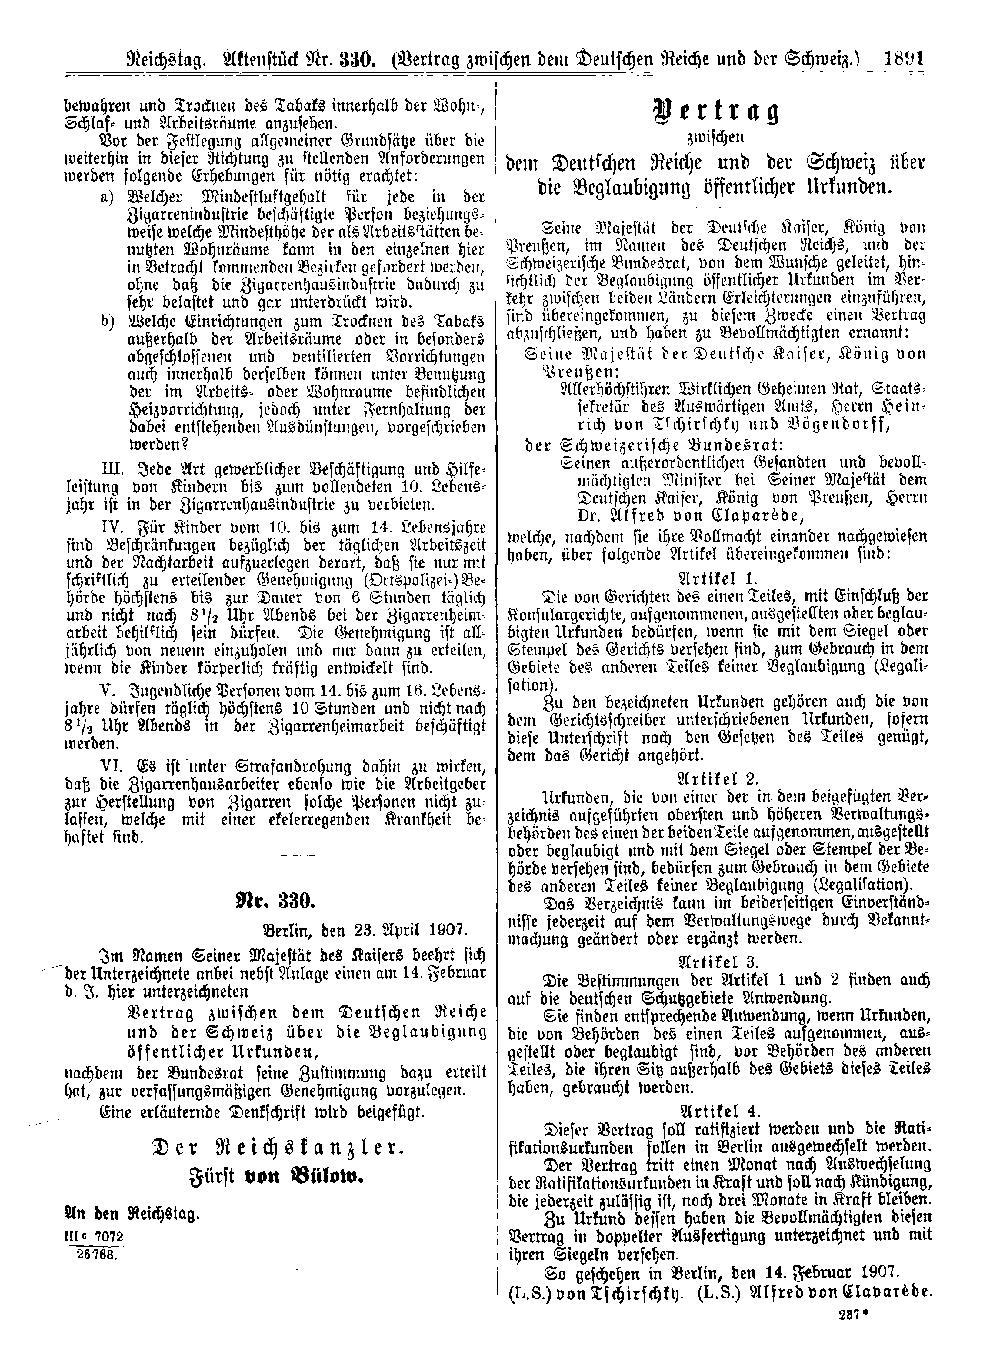 Scan der Seite 1891